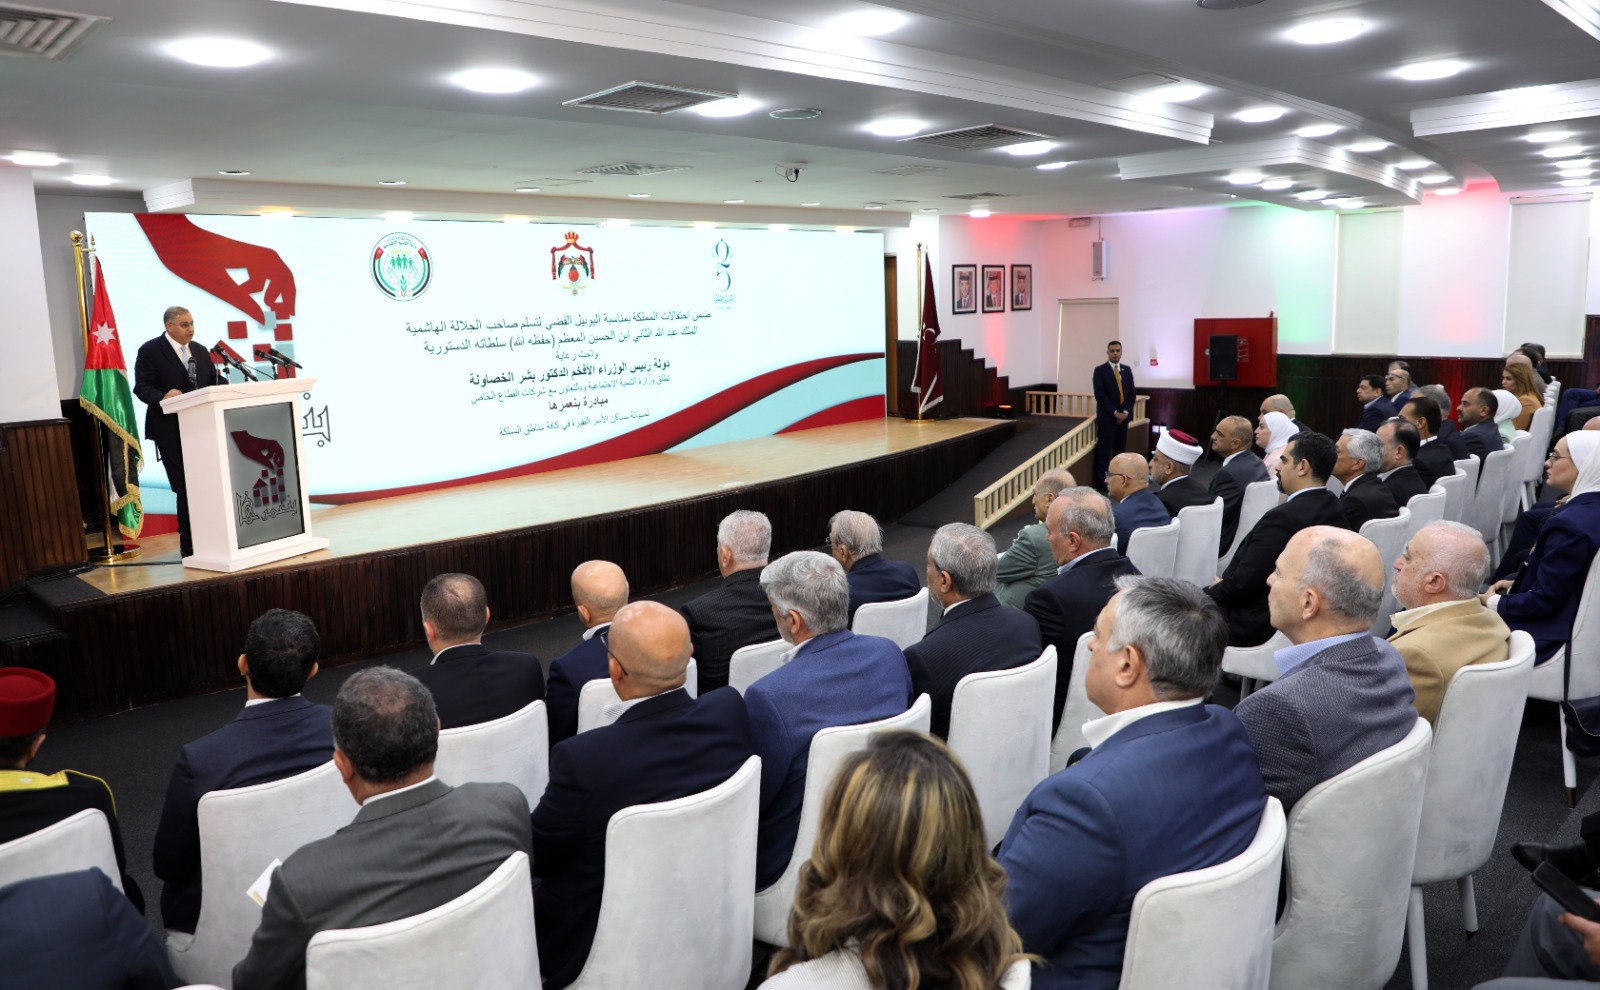 م. أبو هديب  : القطاع الخاص الأردني شريك استراتيجي للحكومة في مسيرة التقدم والبناء والتنمية المجتمعية 